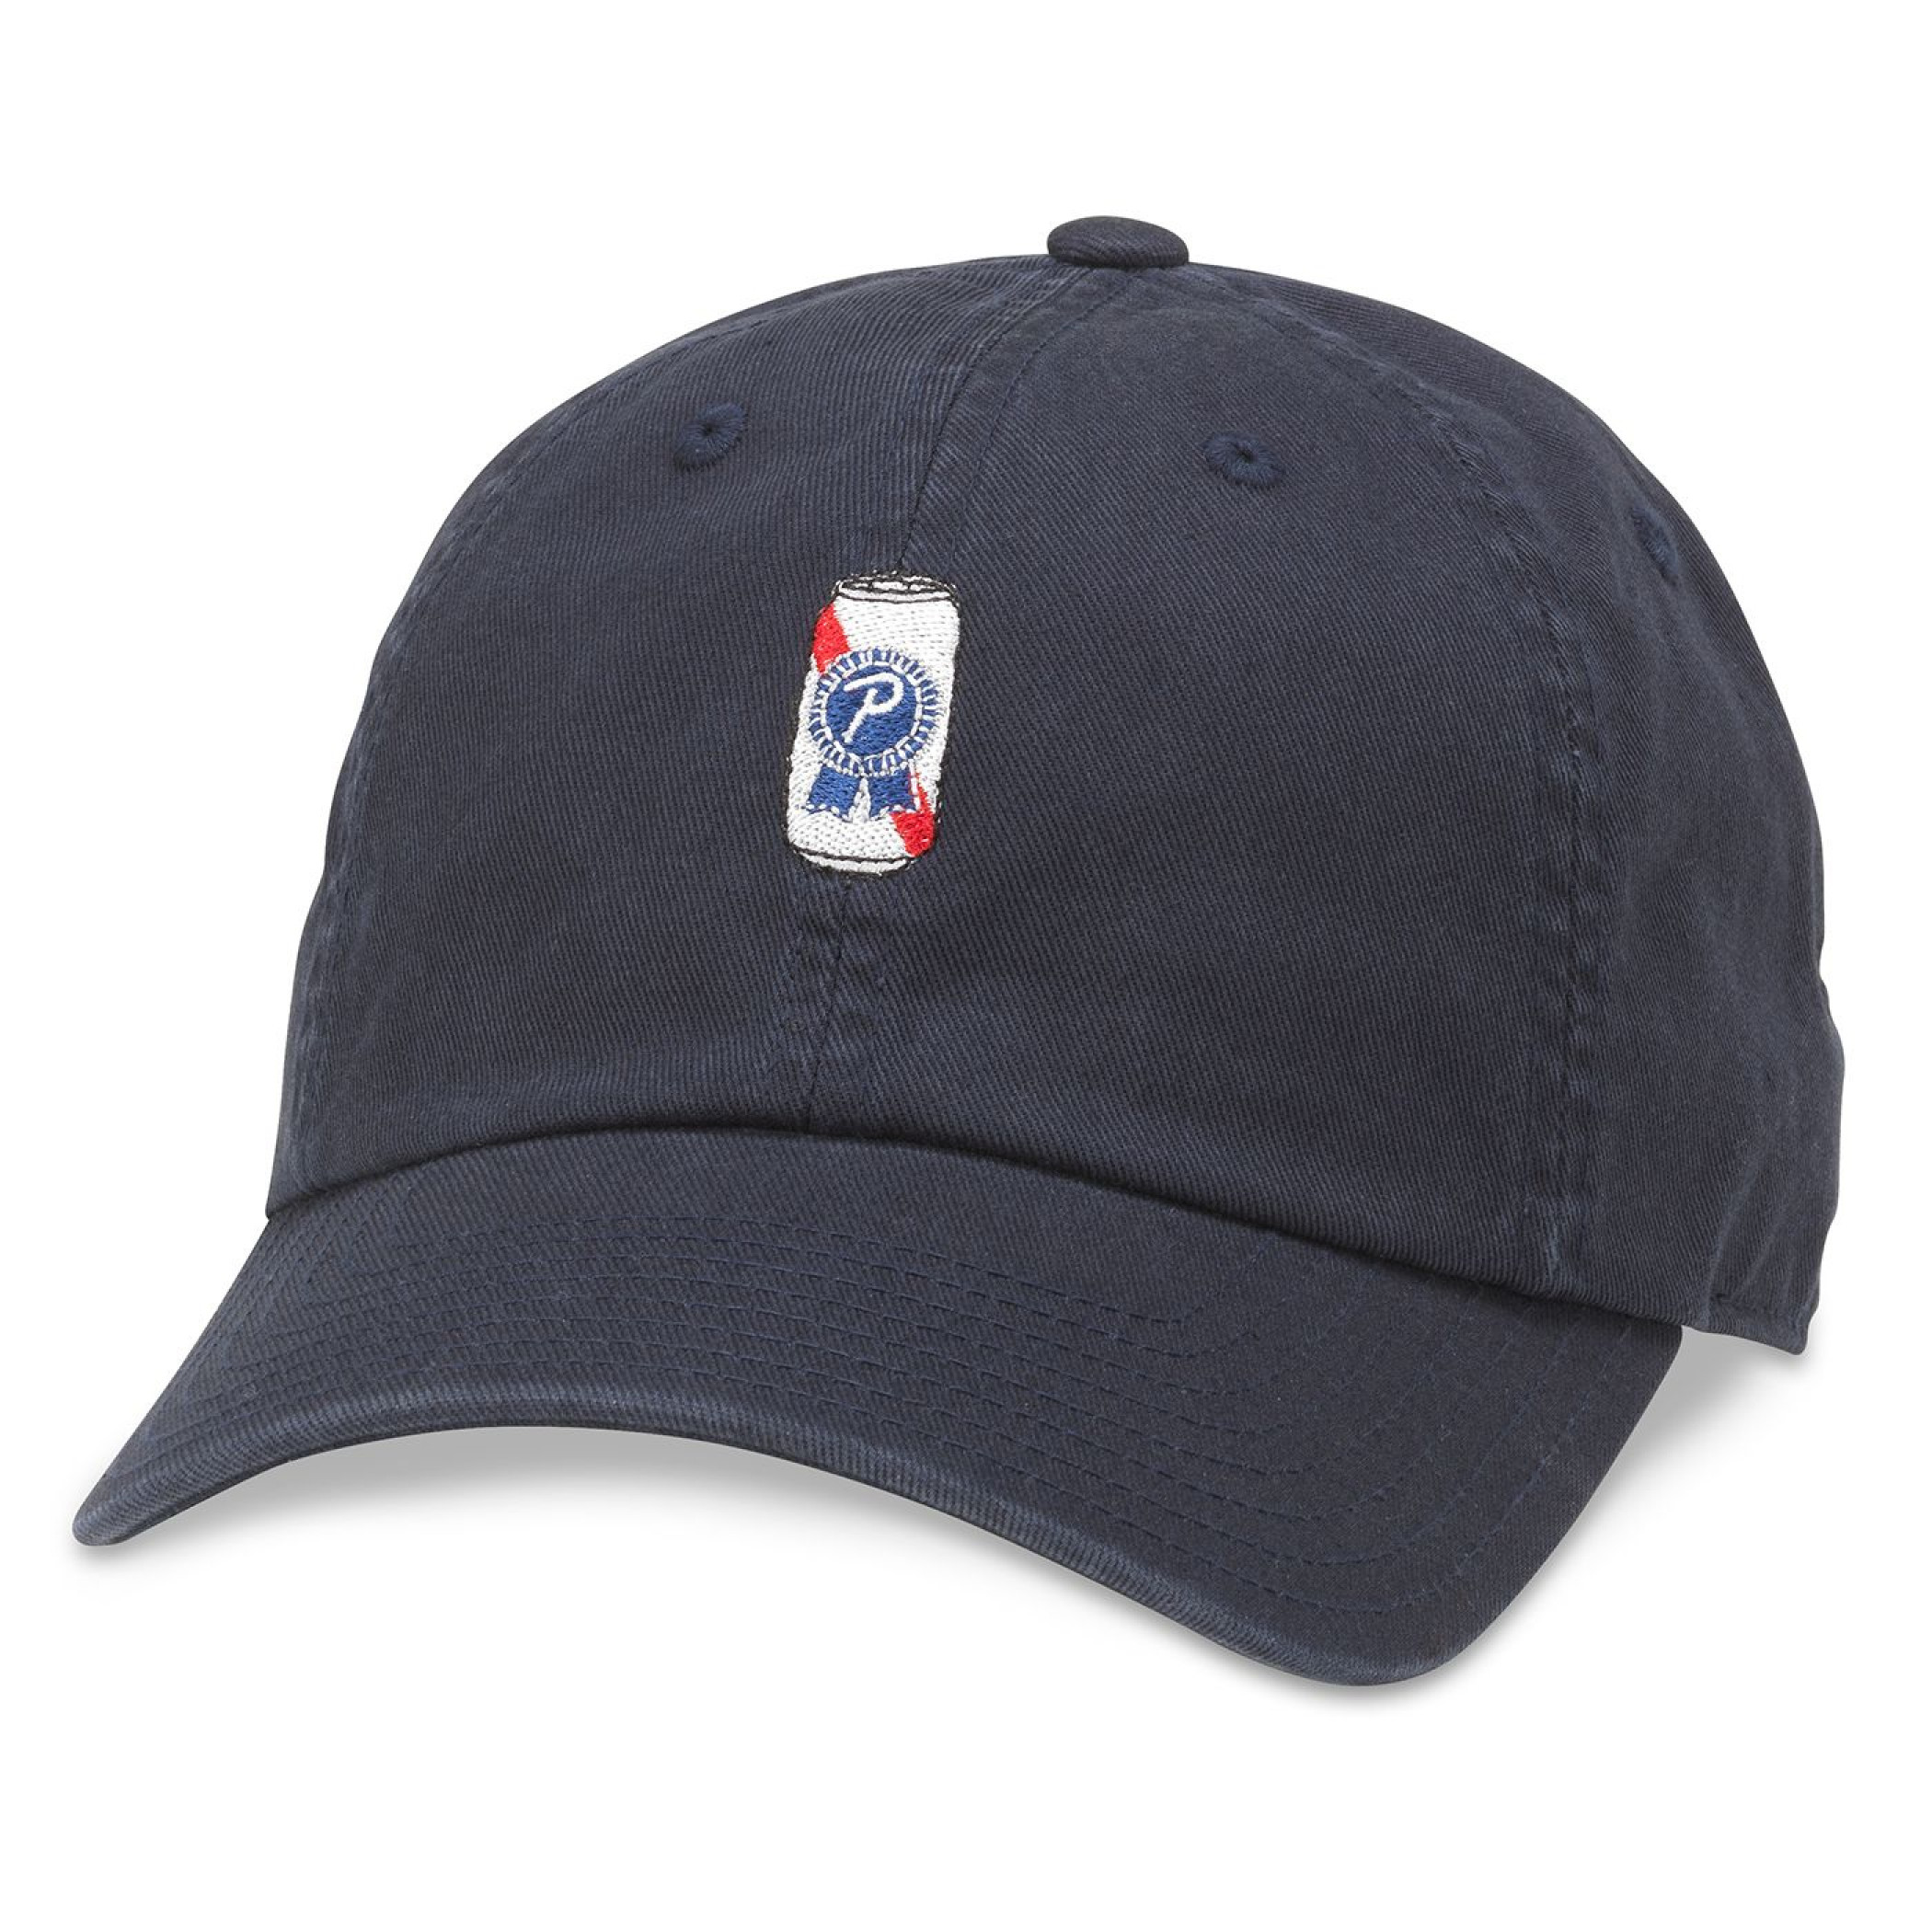 Pabst Blue Ribbon Beer Can Emoji Embroidered Logo Adjustable Hat